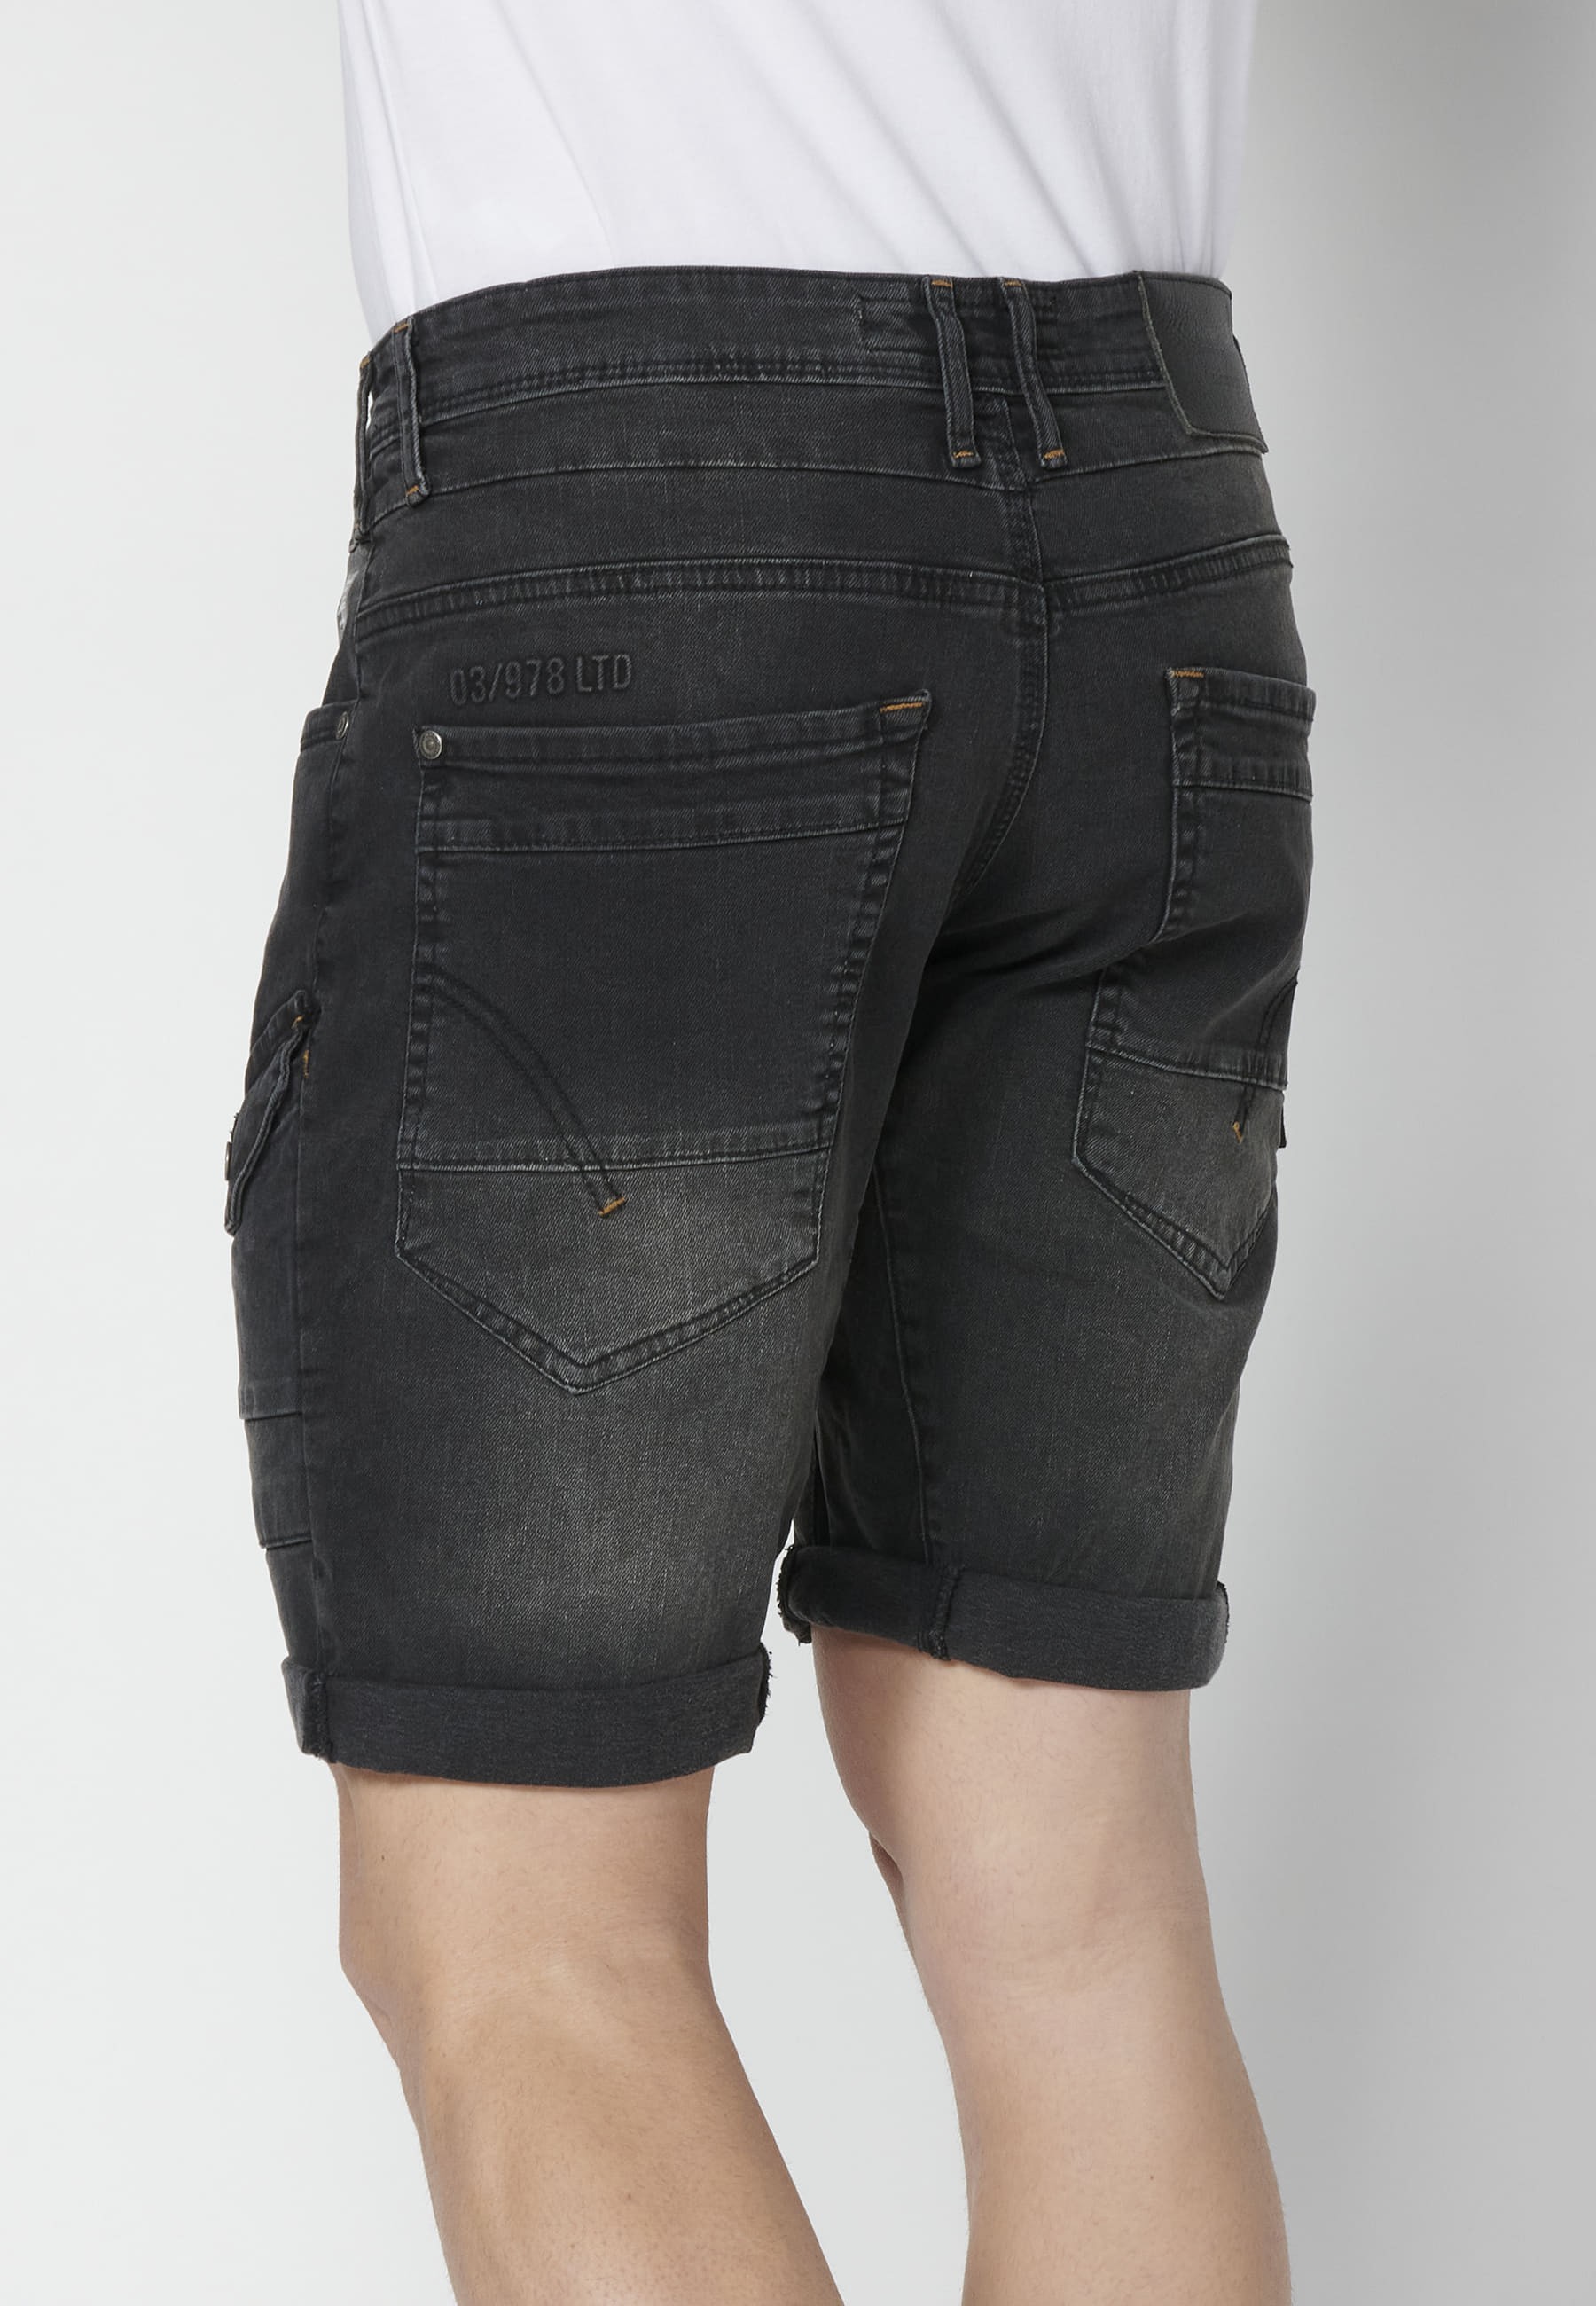 Shorts Bermuda Denim Stretch Regular Fit with four pockets Black color for Men